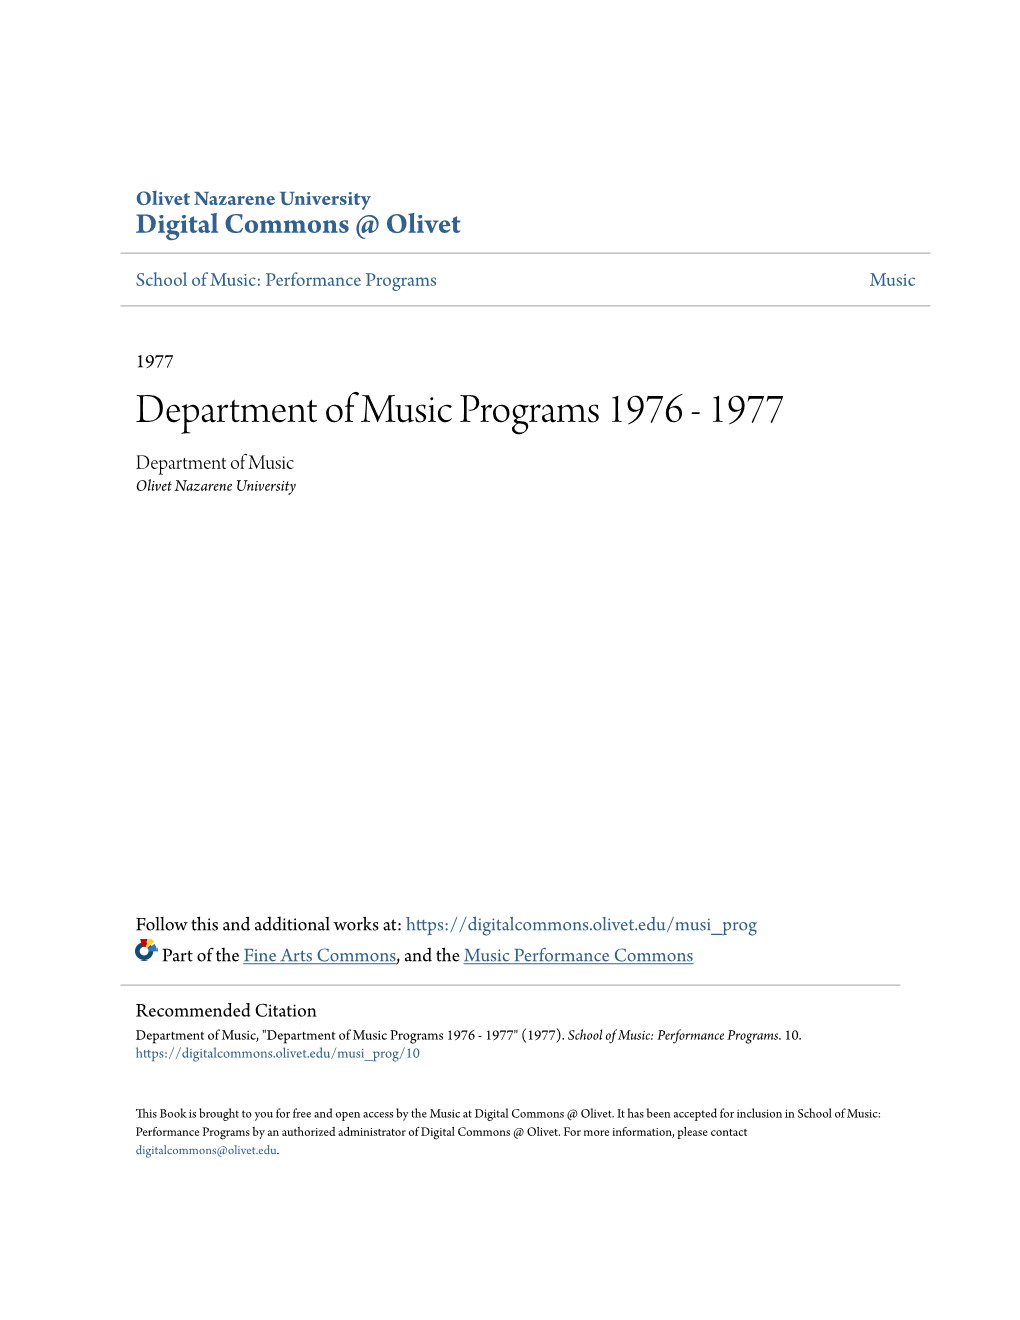 Department of Music Programs 1976 - 1977 Department of Music Olivet Nazarene University